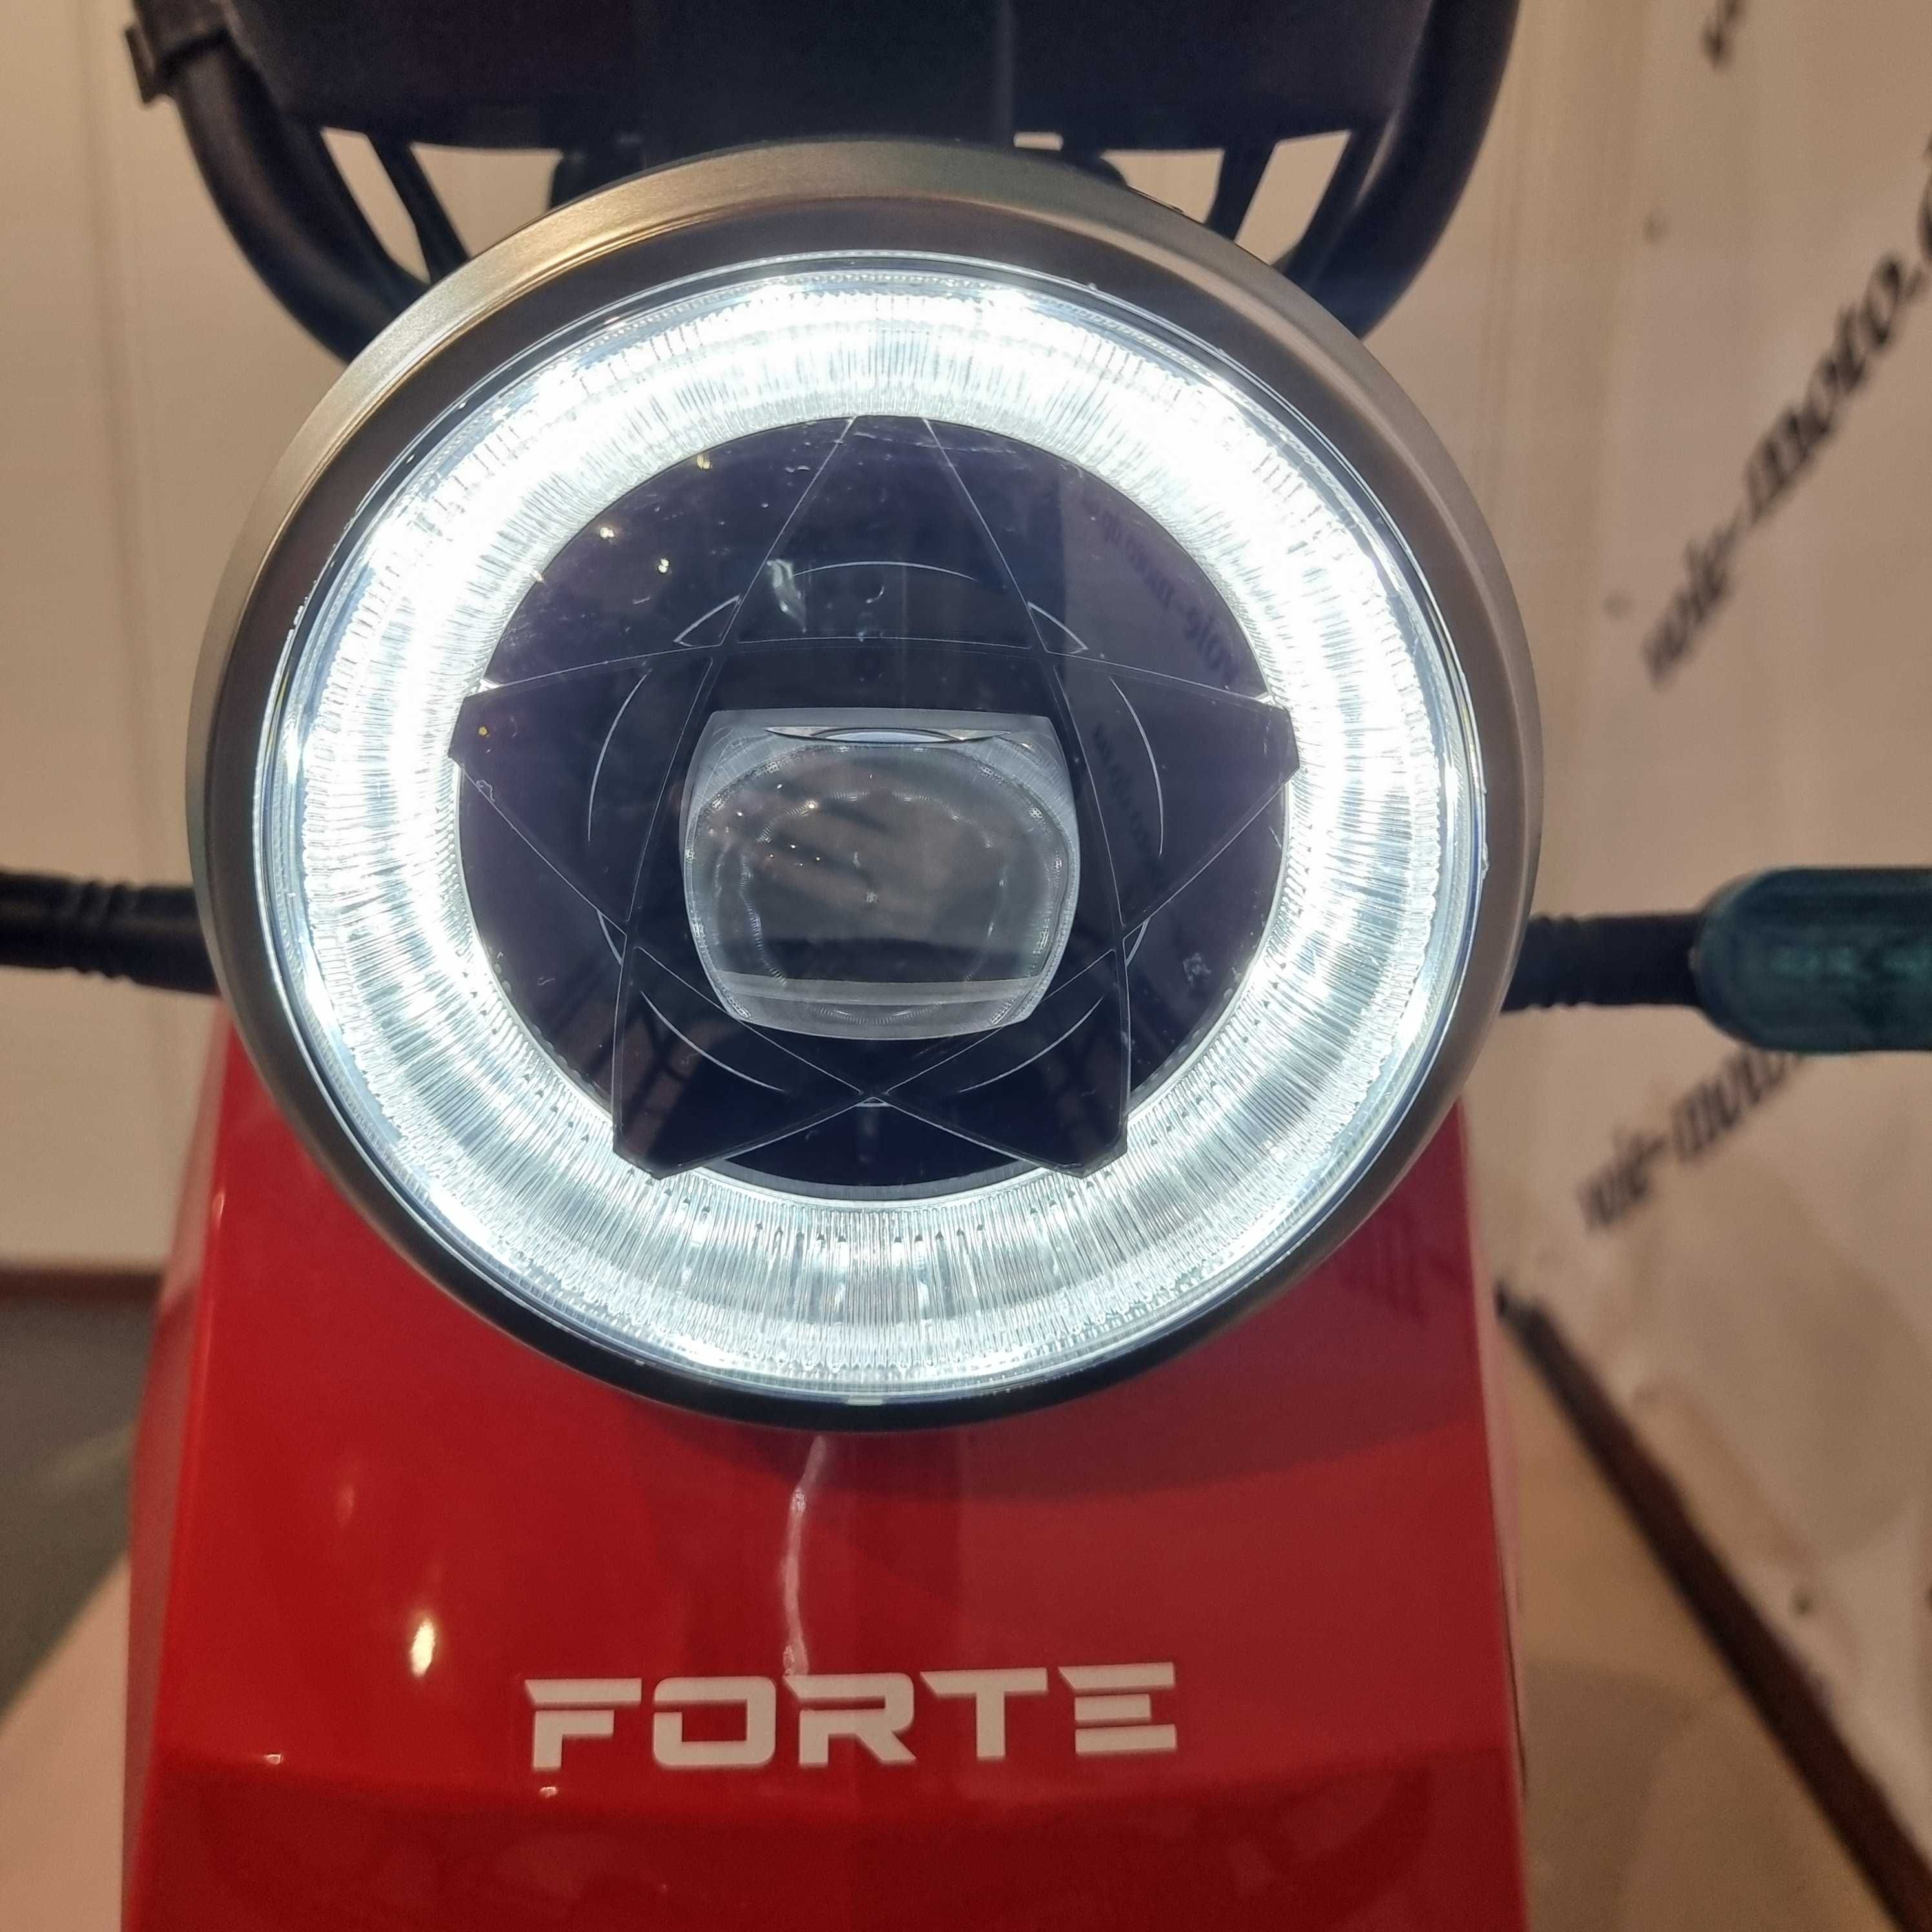 Велоскутер аккумуляторный FORTE GS500 Червоний